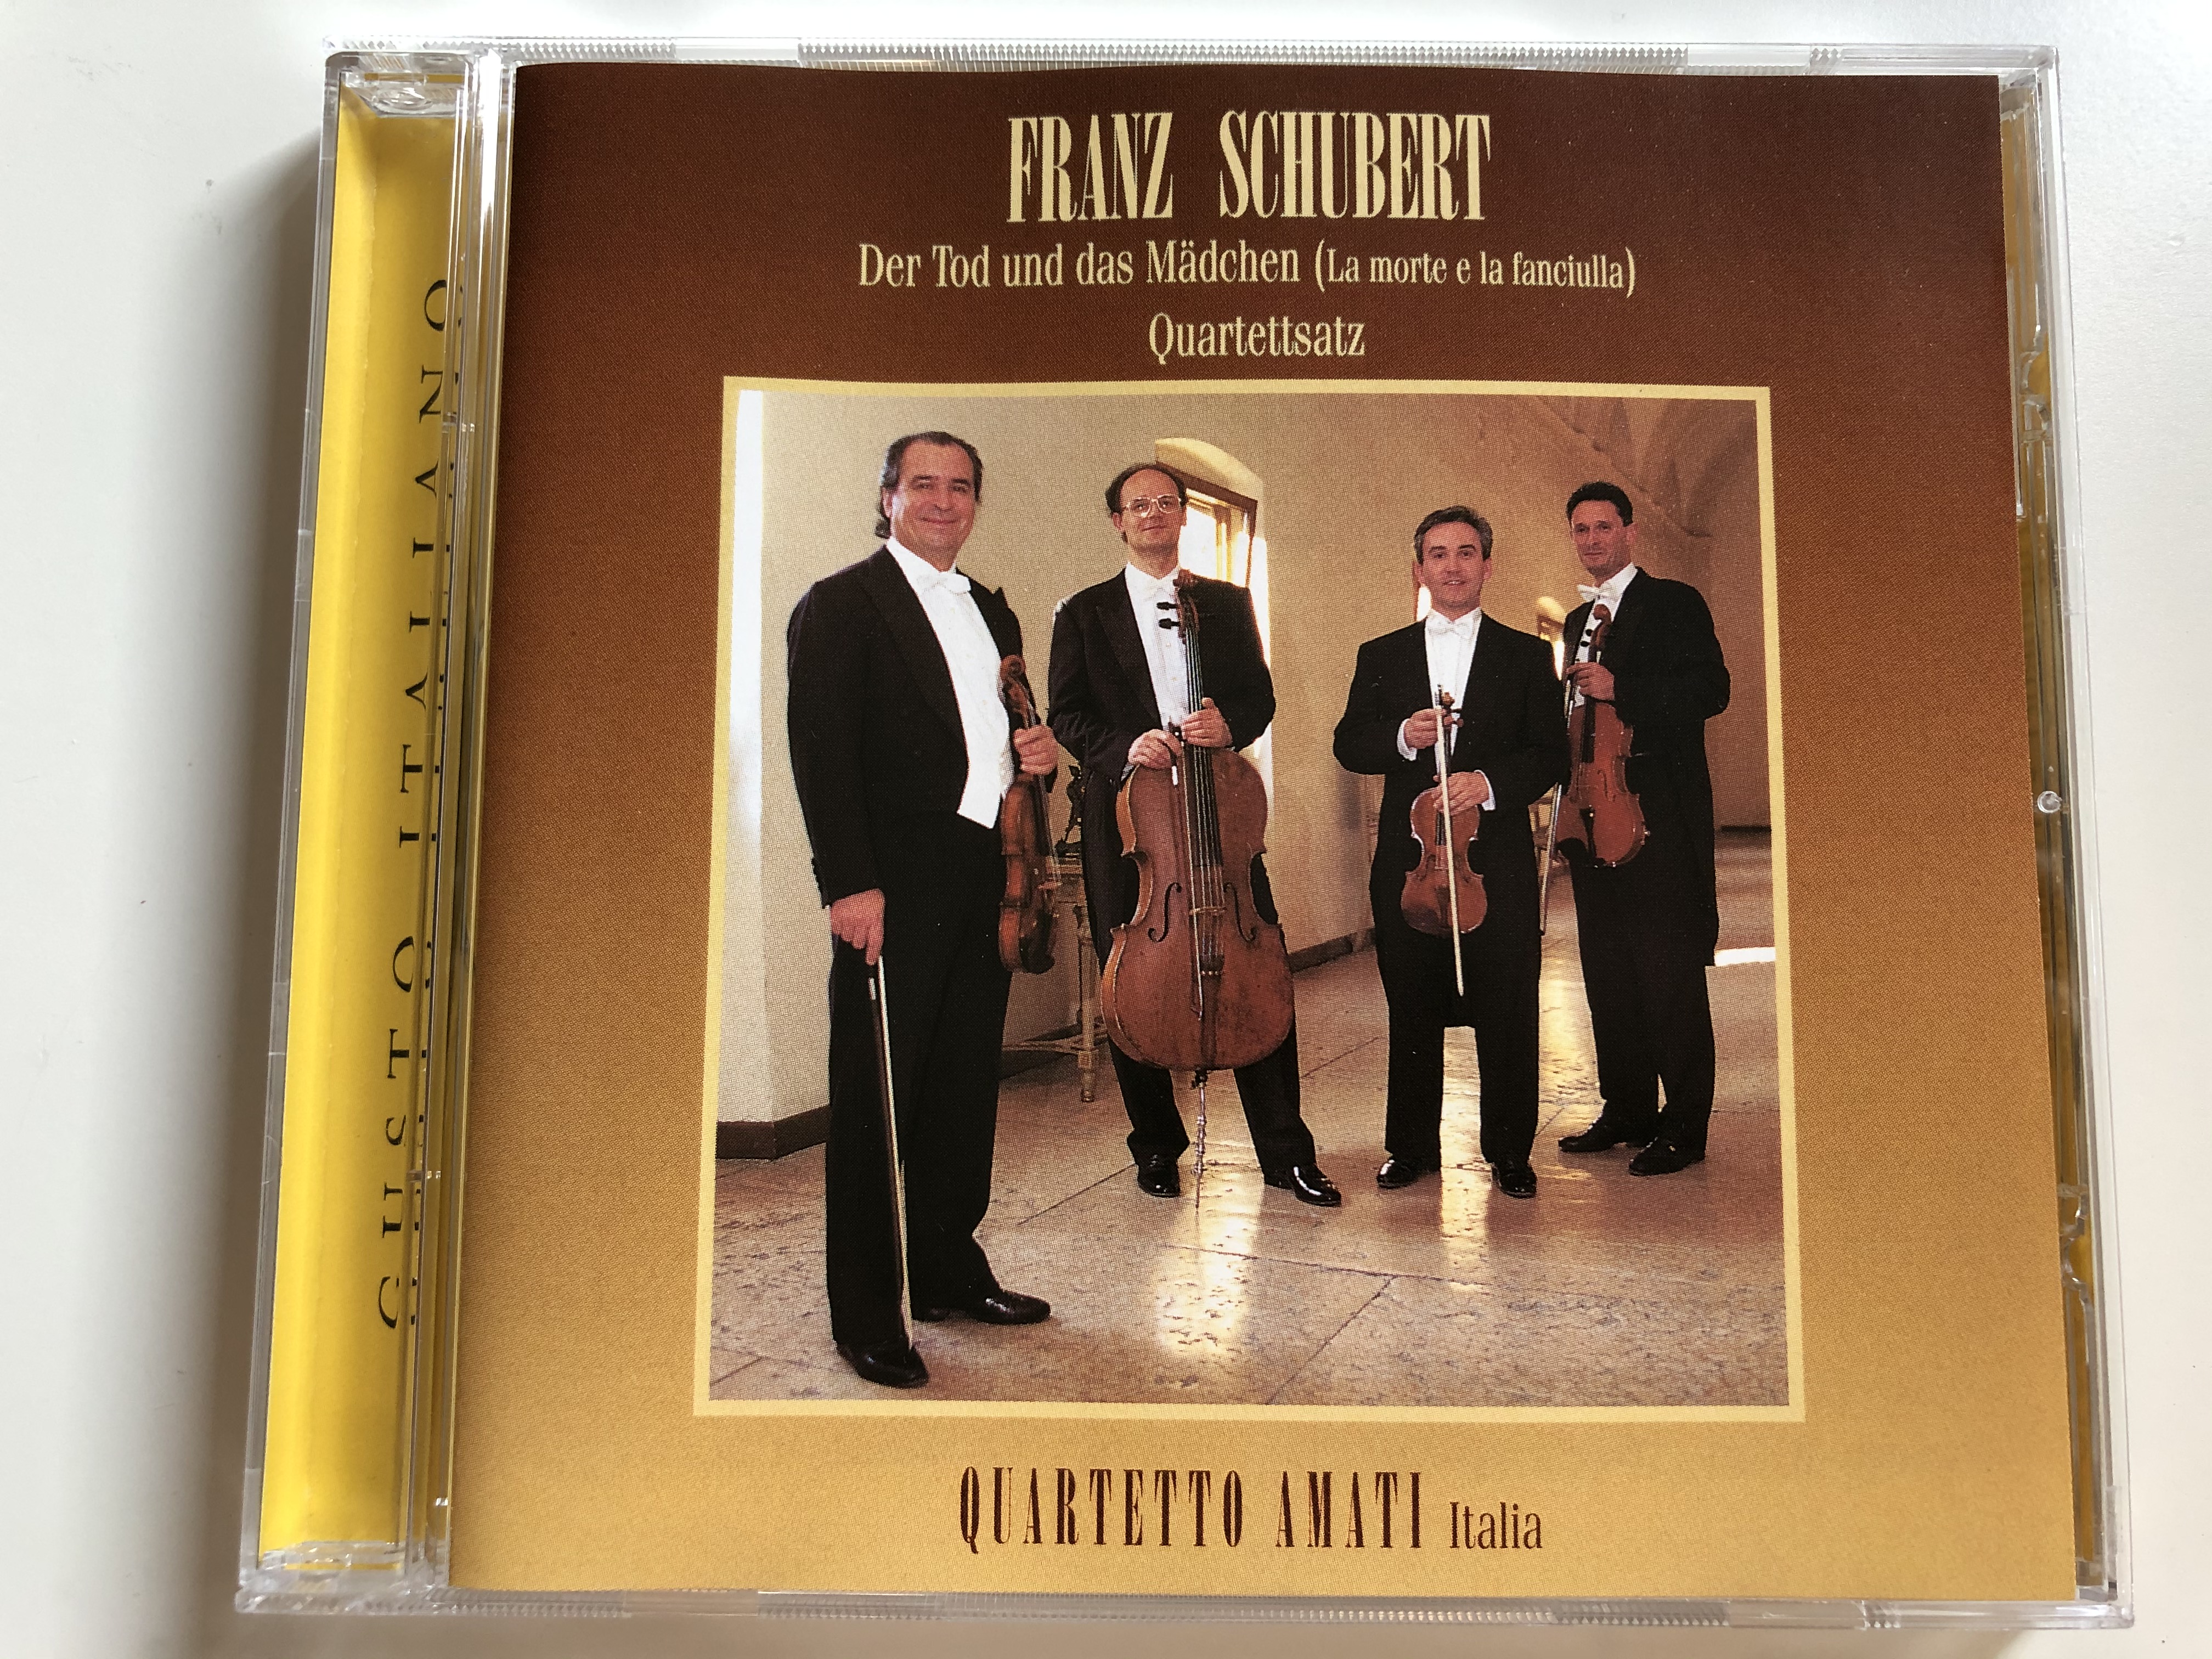 franz-schubert-der-tod-und-das-madchen-la-morte-e-la-fanciulla-quartetto-amati-italia-gusto-italiano-audio-cd-1996-gi-053-1-.jpg